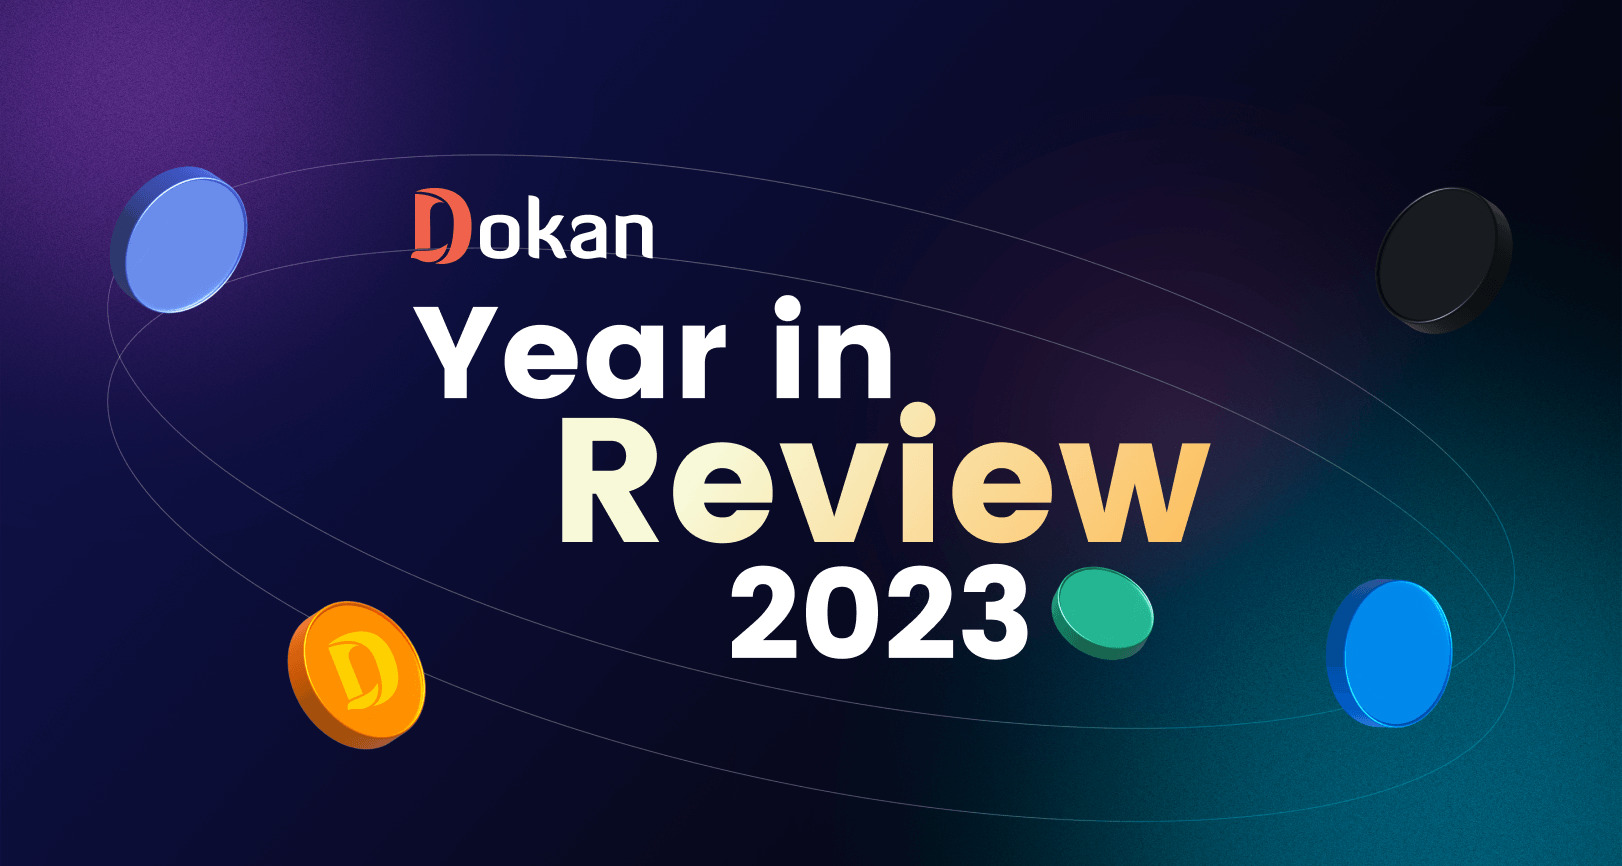 Bilan de l'année Dokan 2023 : retour en arrière !